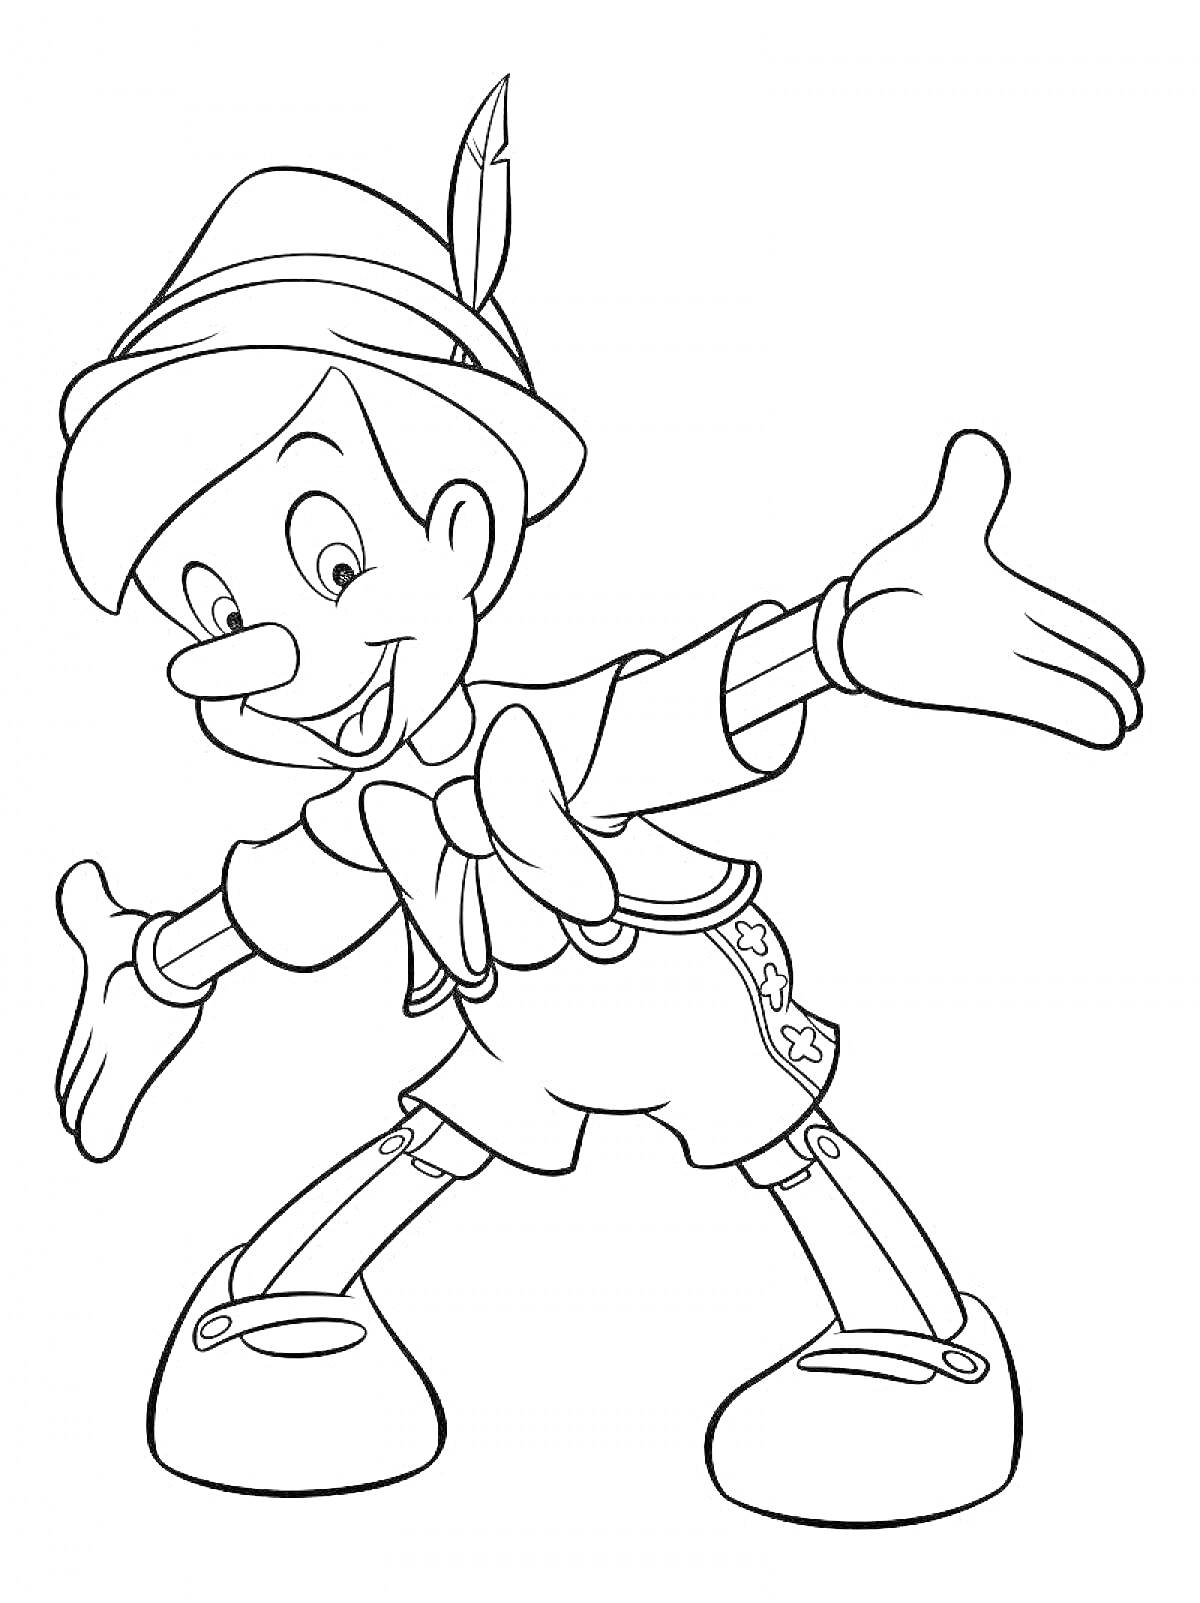 Раскраска Пиноккио с открытыми руками в шляпе с пером